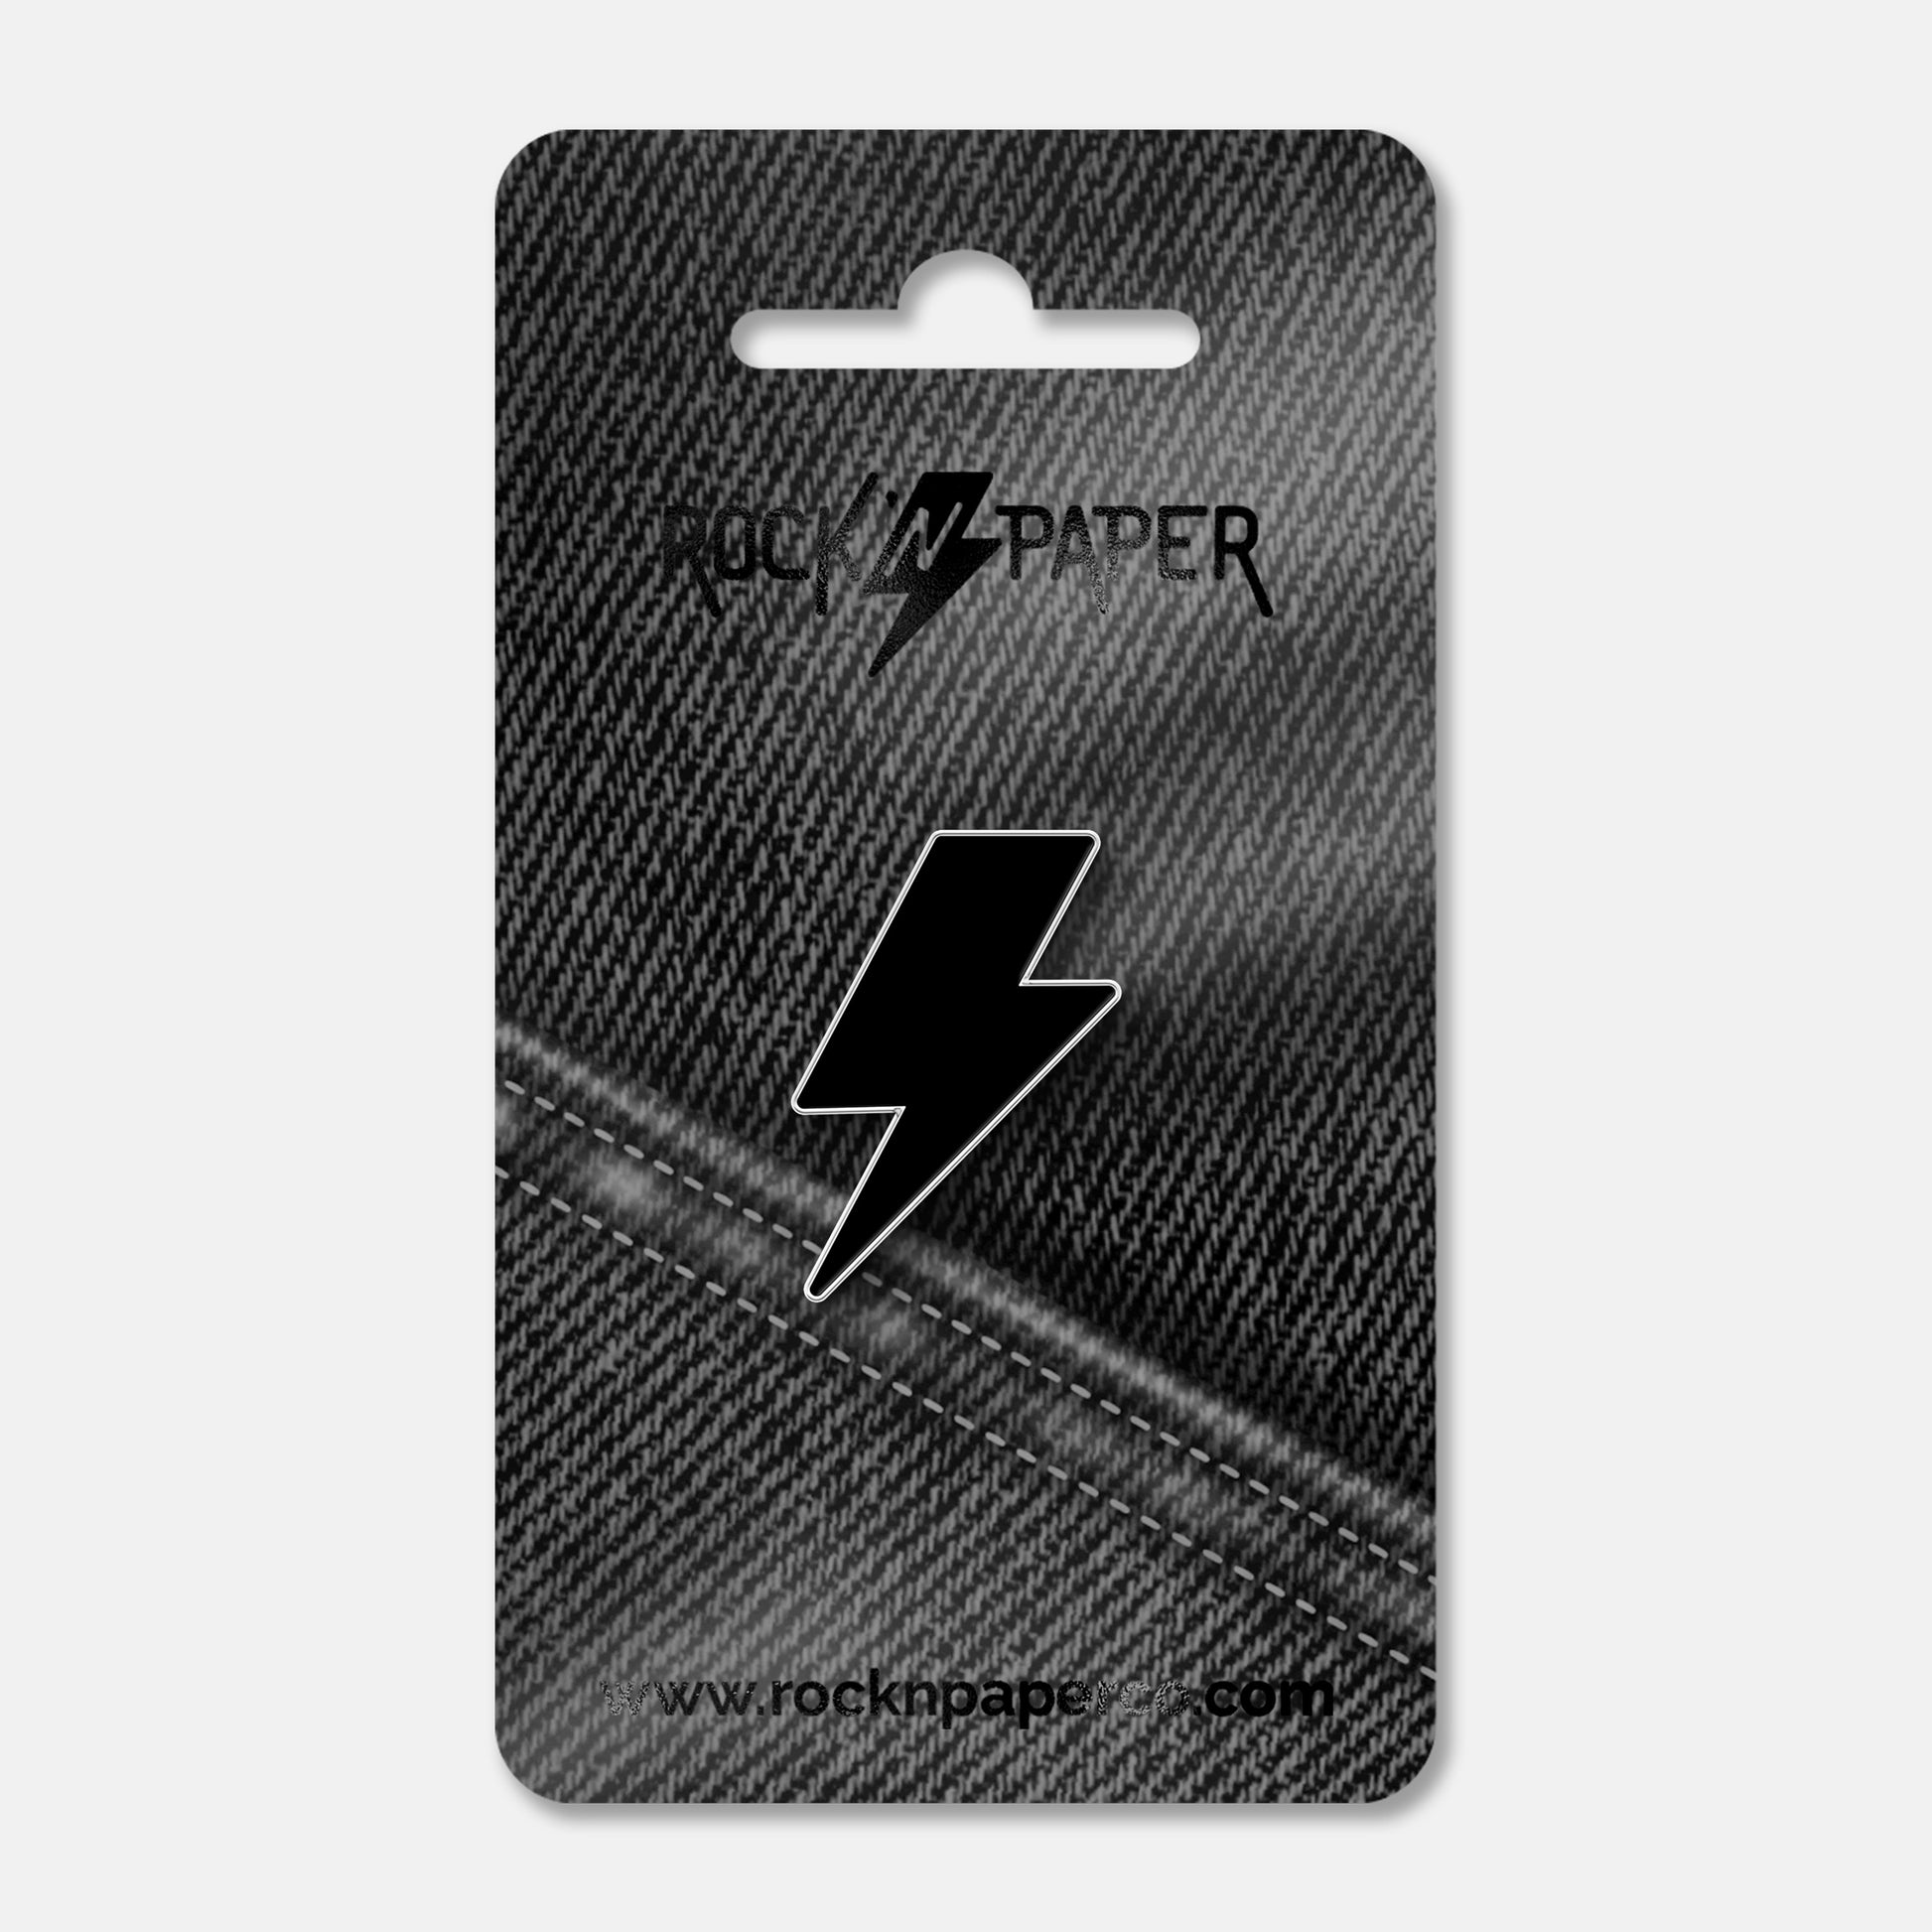 Lightning Bolt Pin button